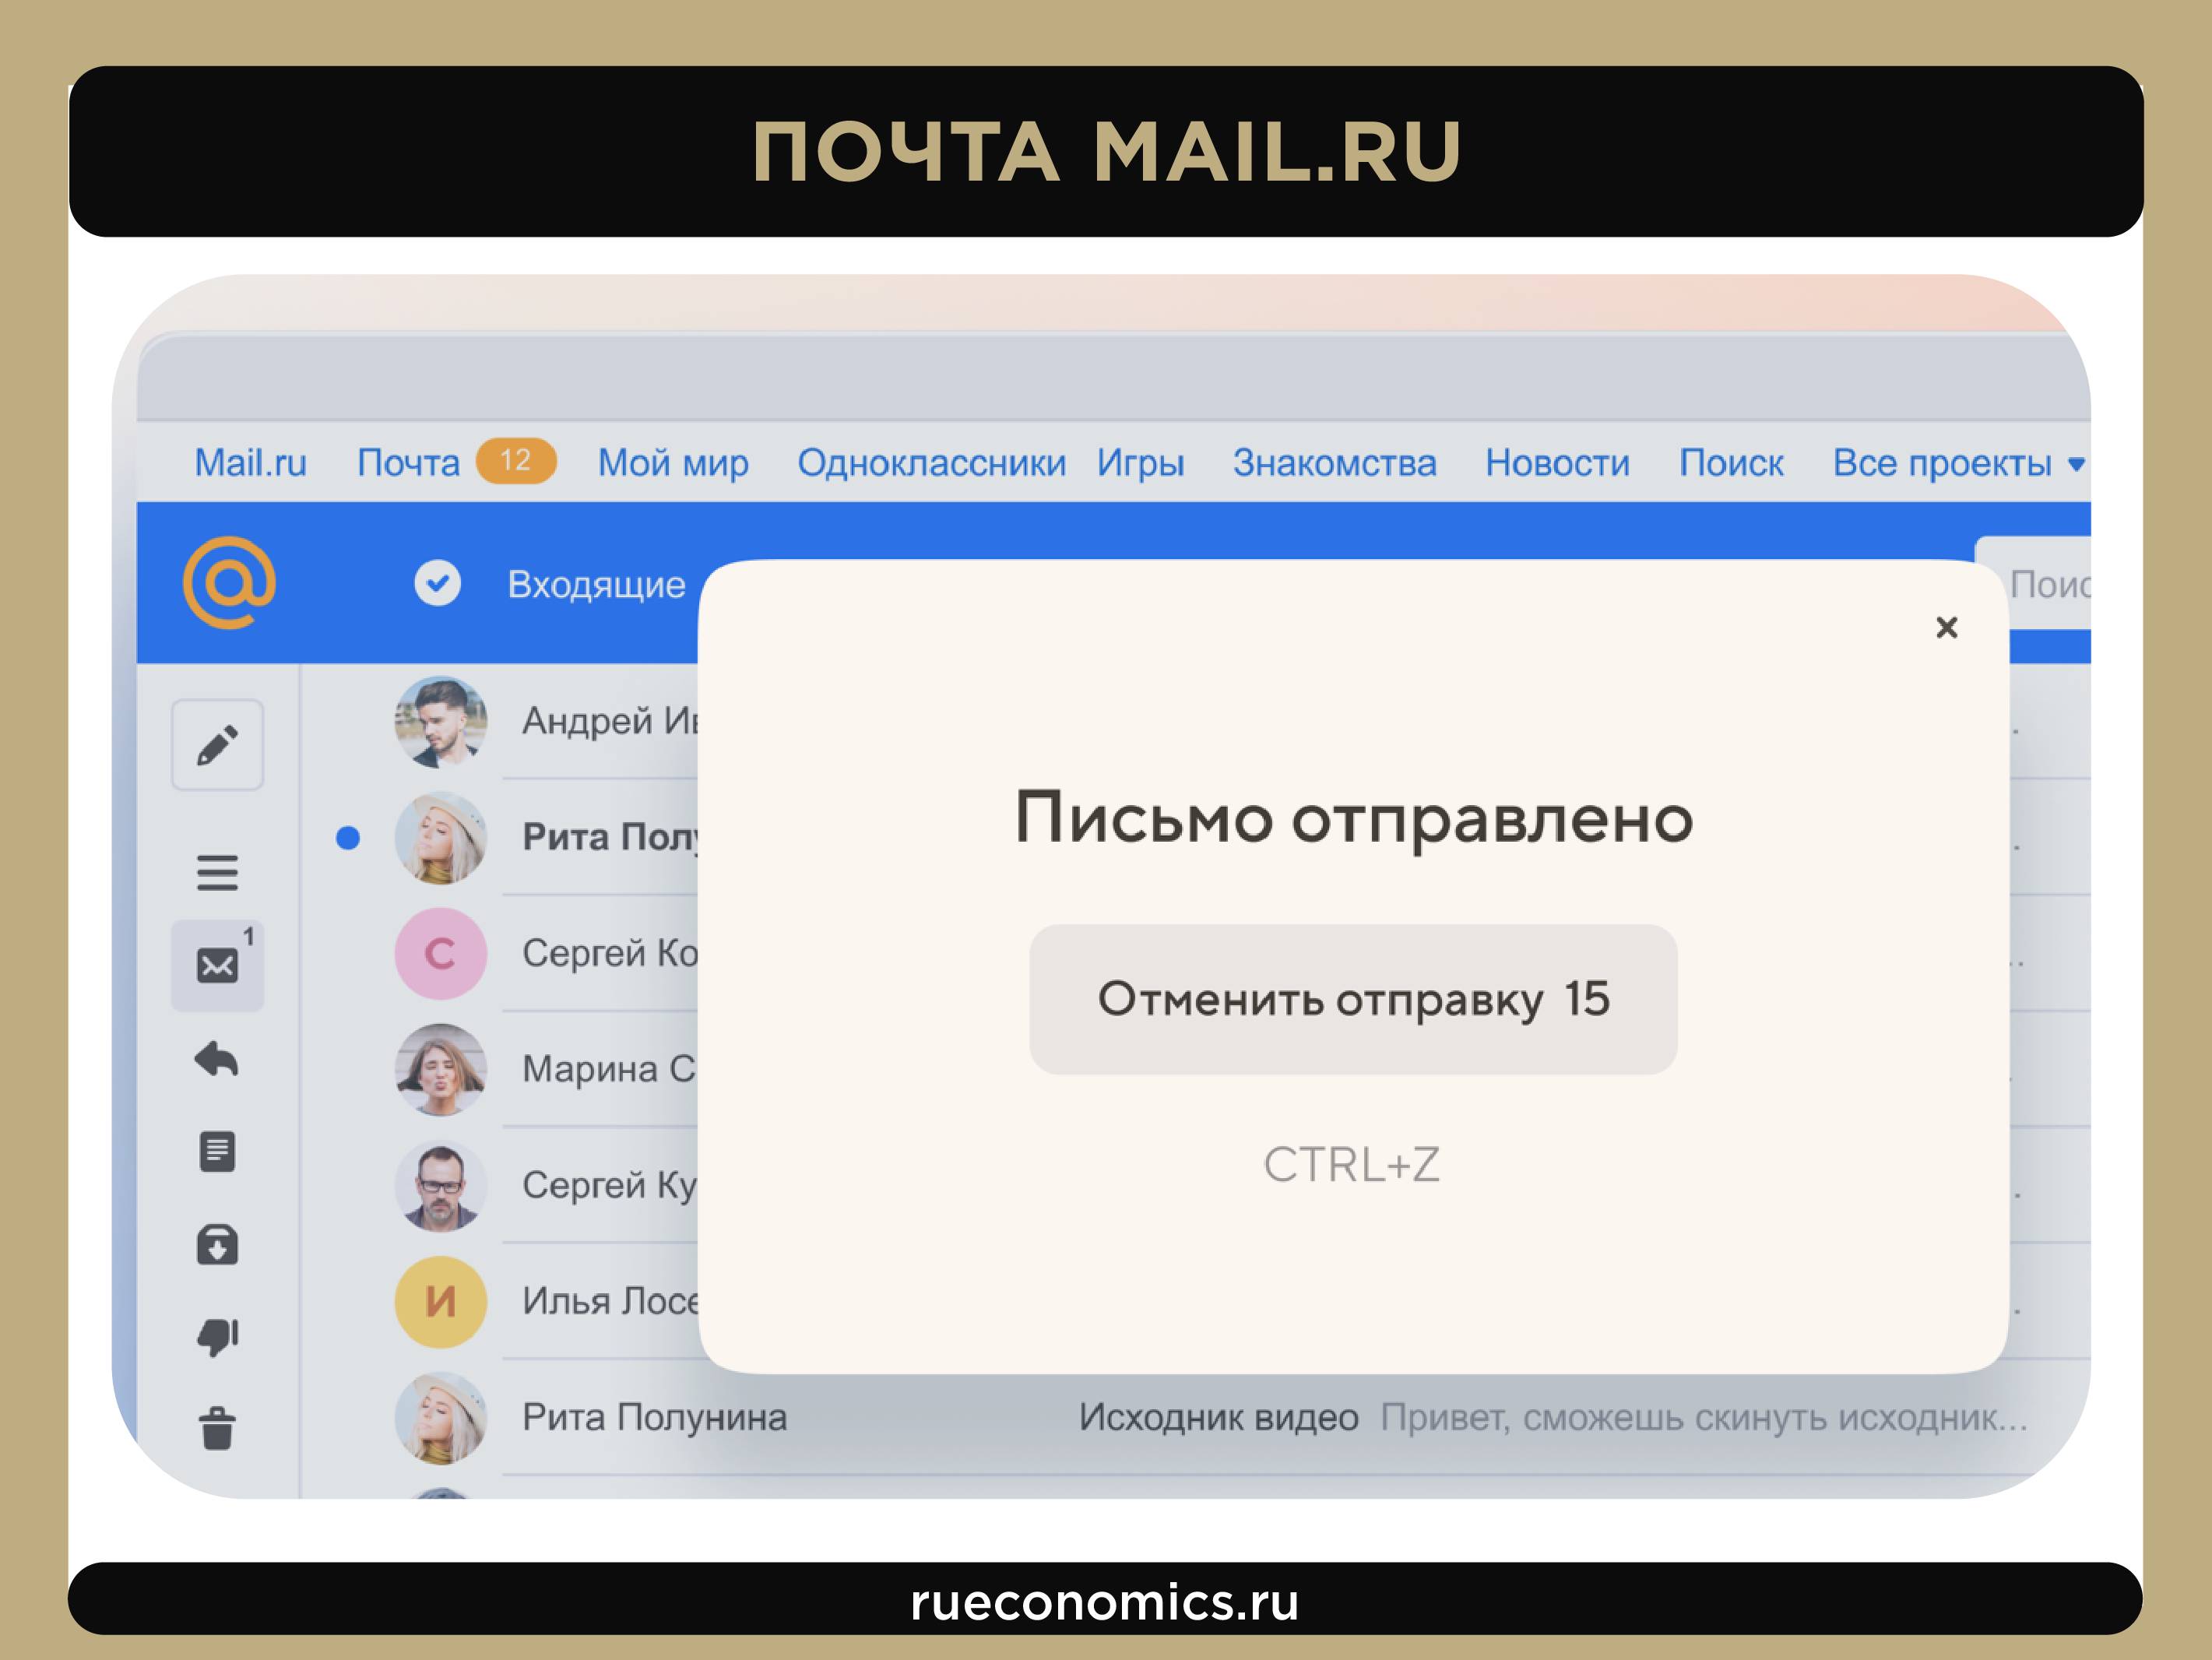 Le chemin du groupe Mail.ru à VK: comment le service postal est devenu une multinationale